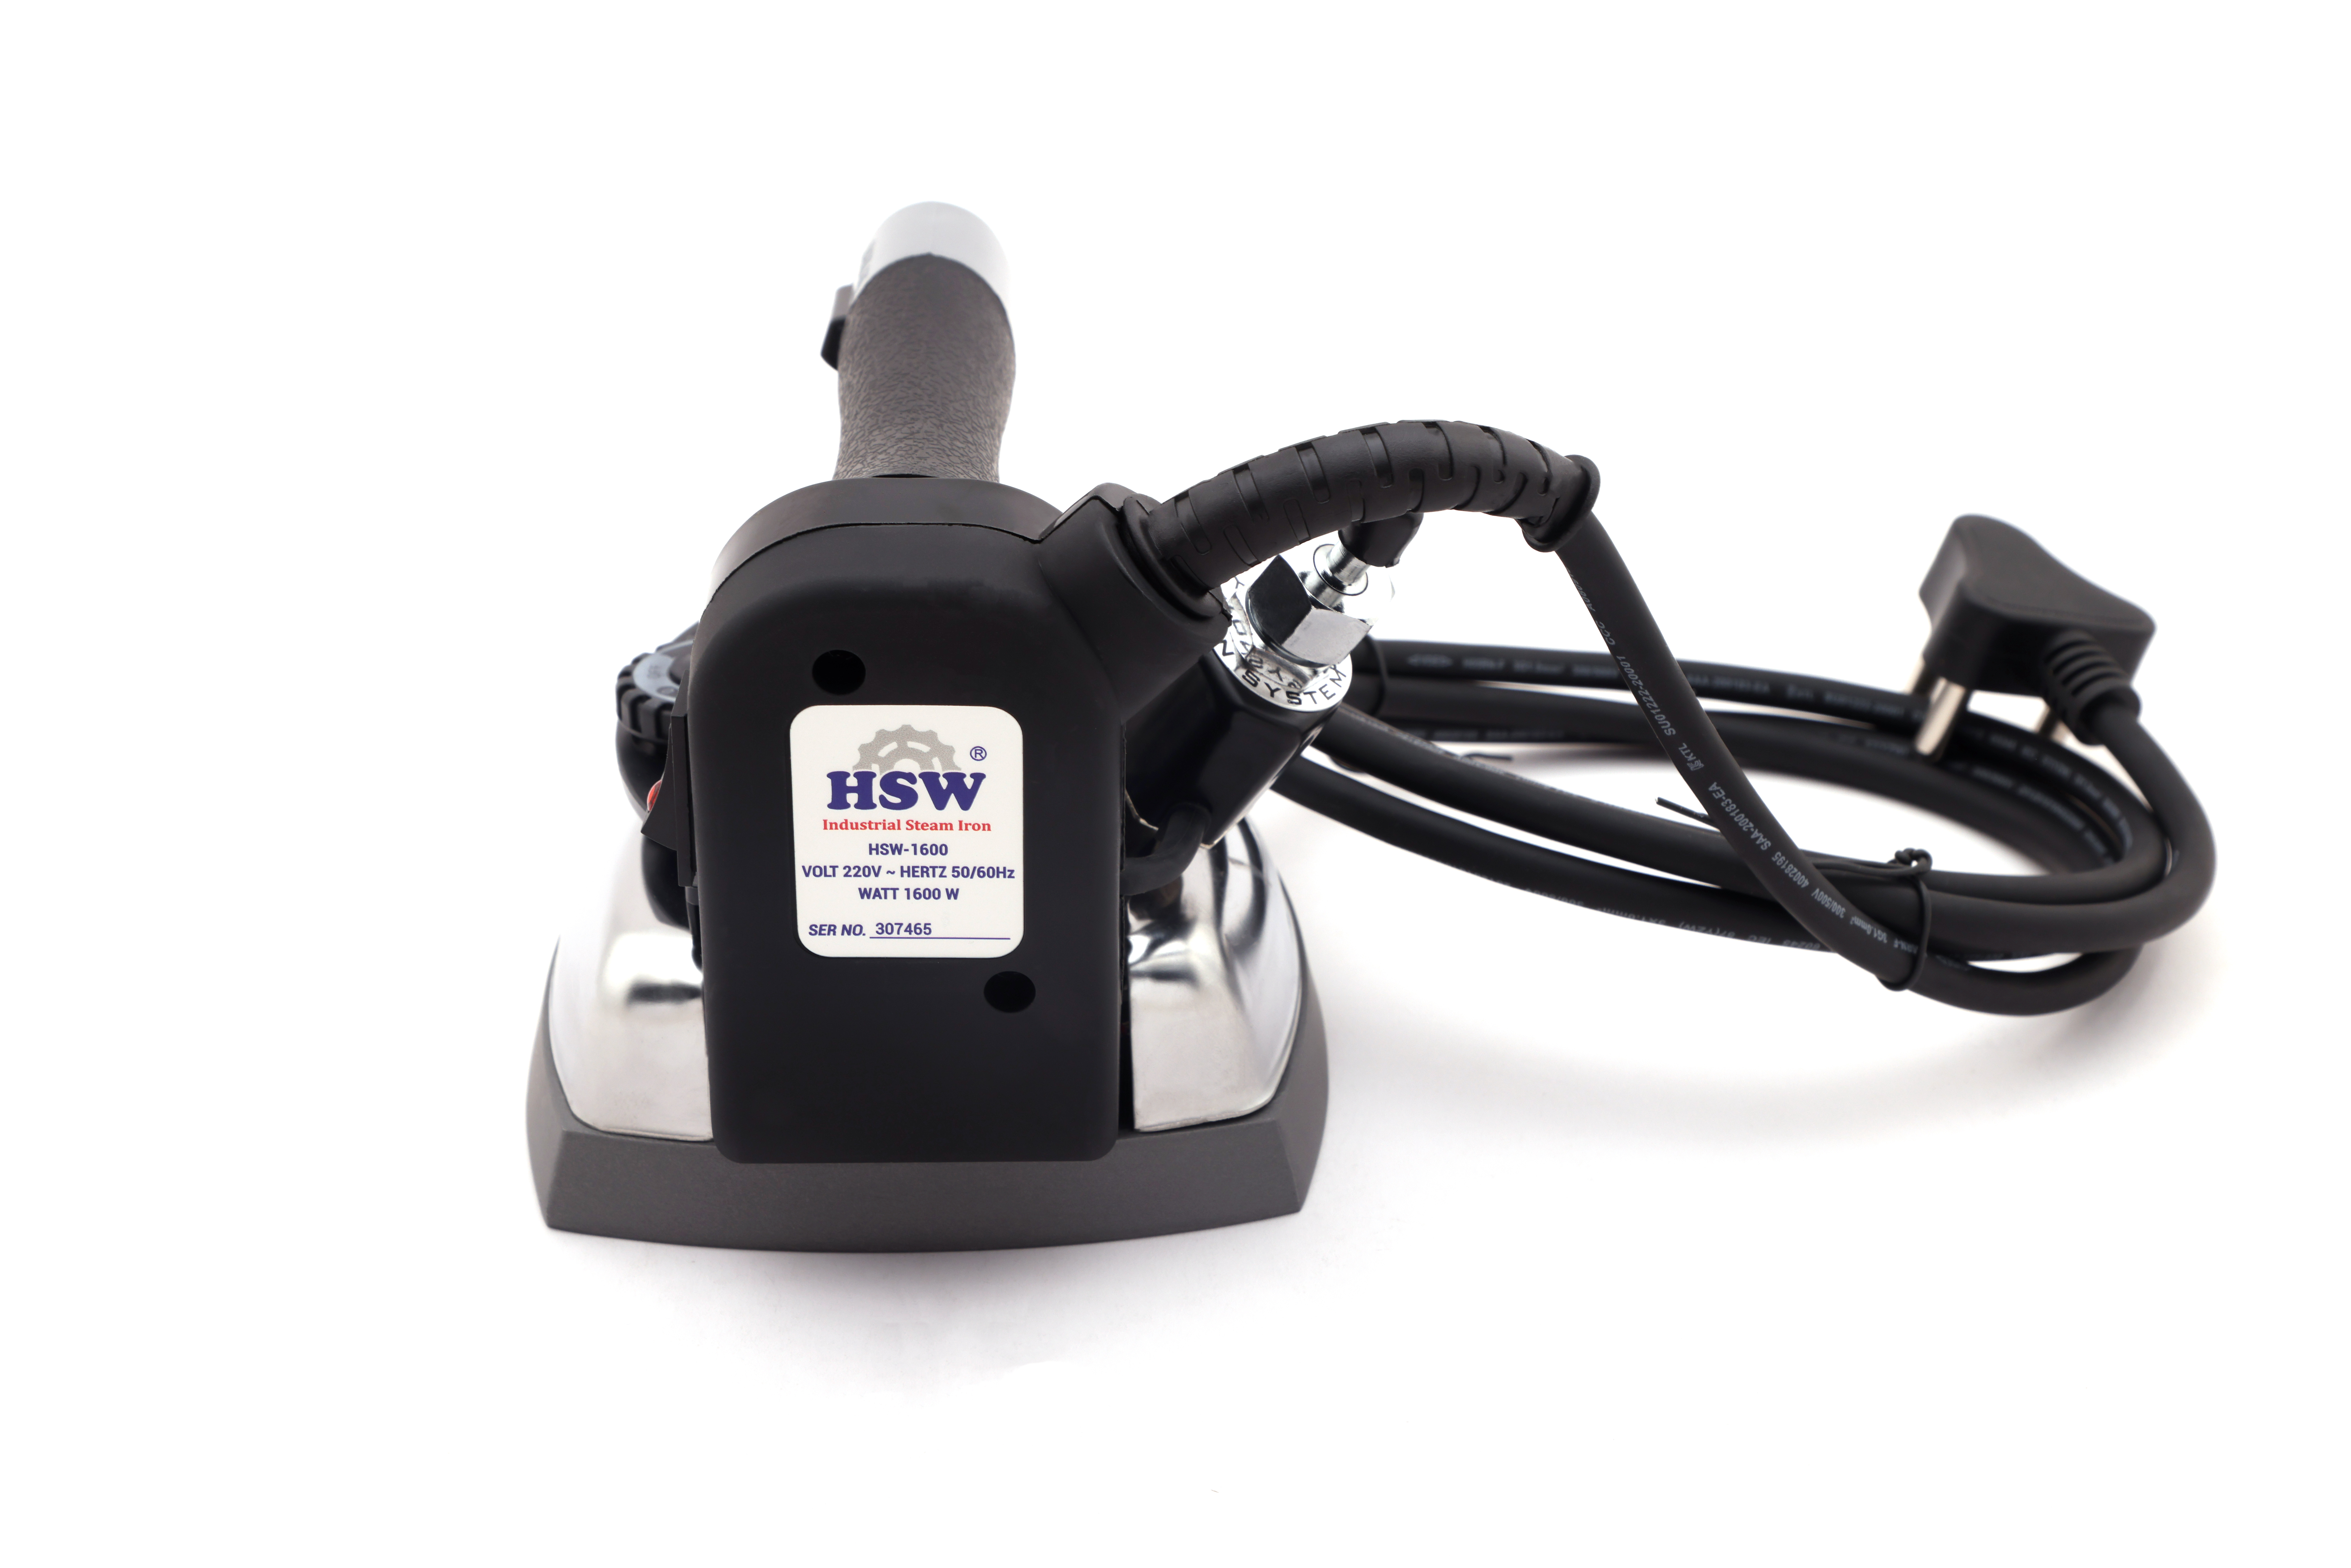 HSW Steam iron 1600 watt